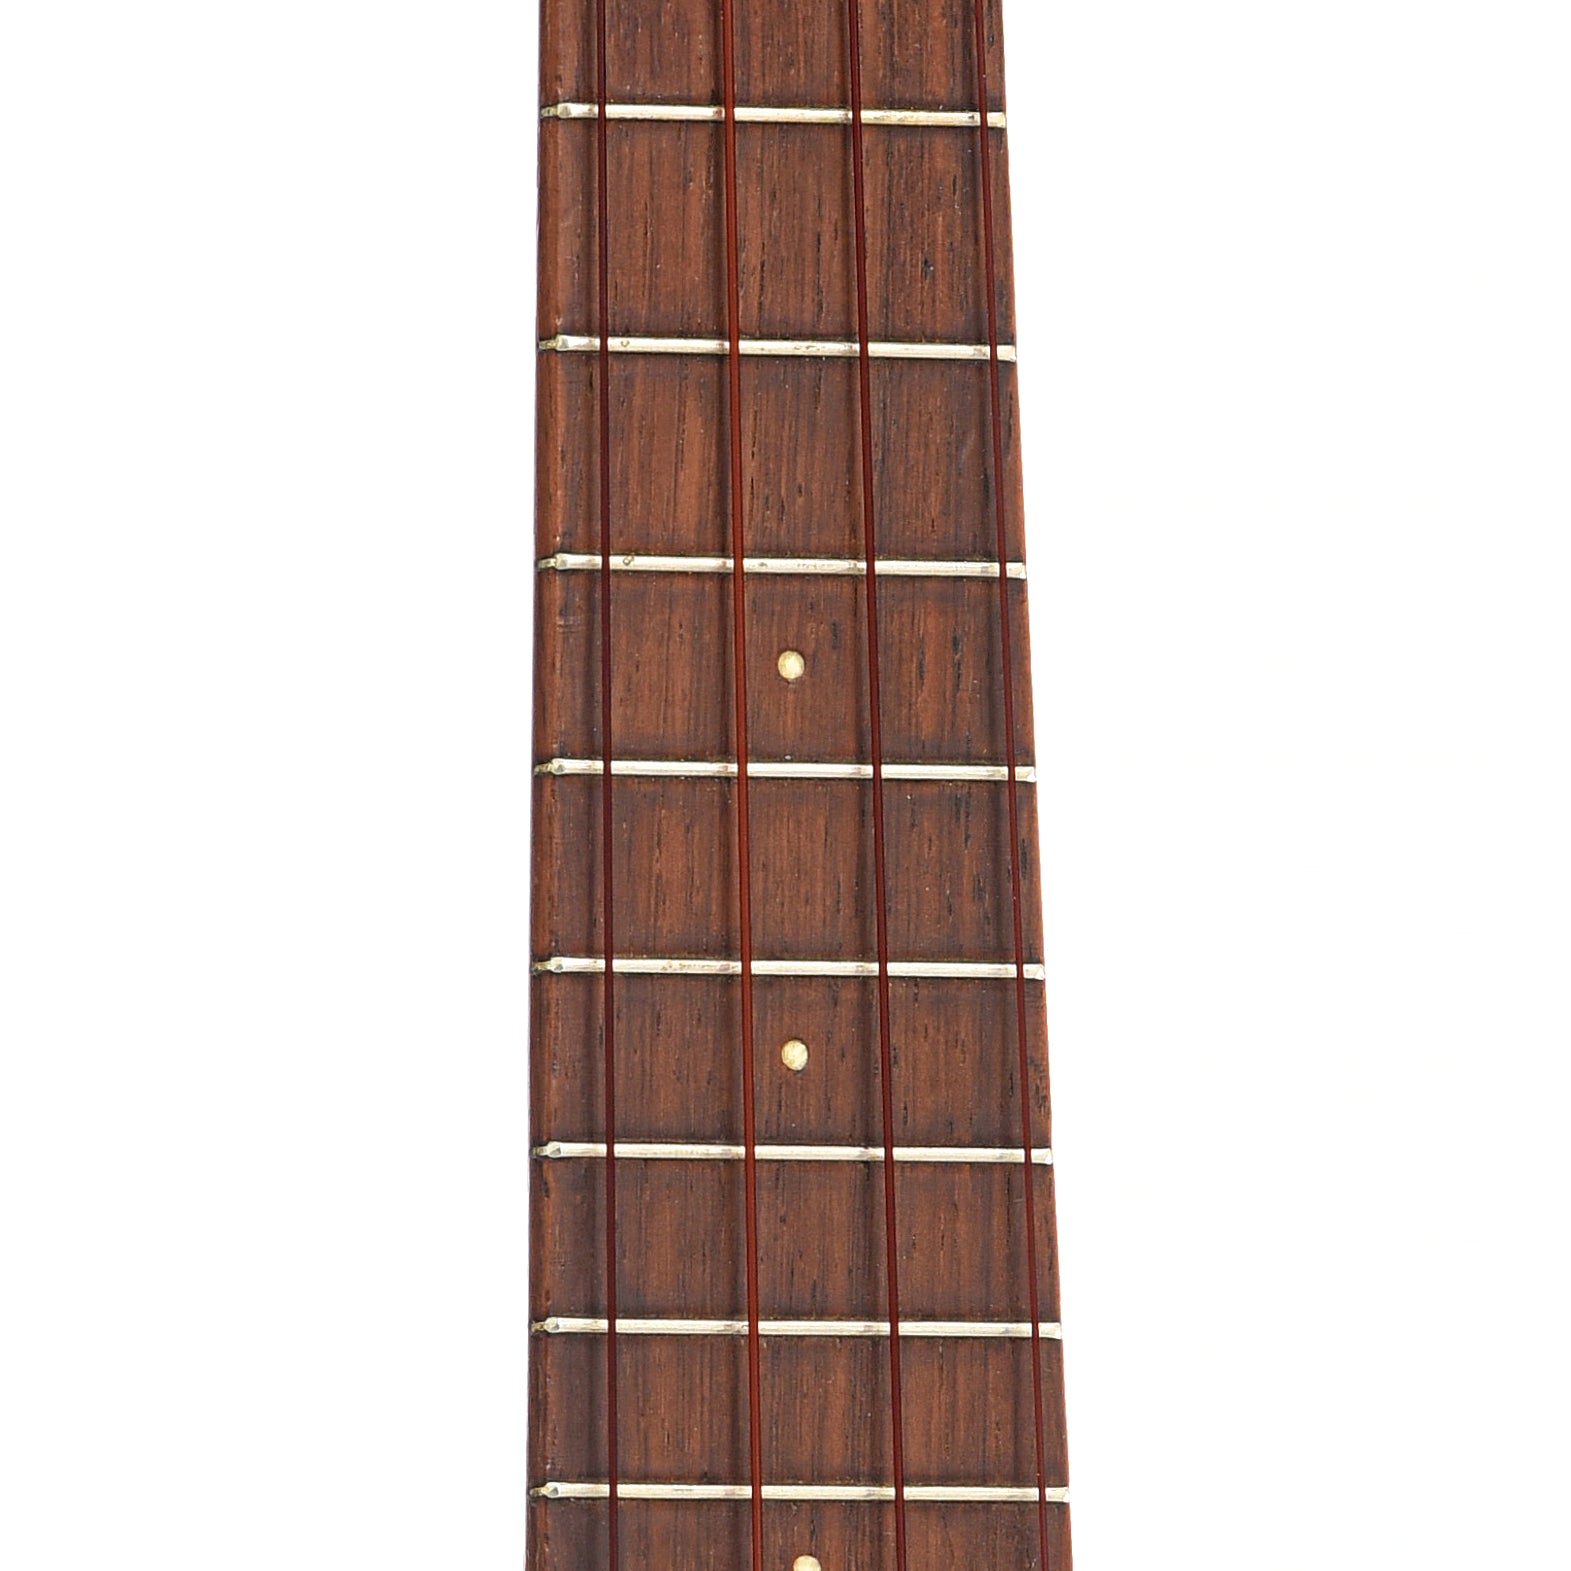 Fretboard of Style 0 soprano ukulele